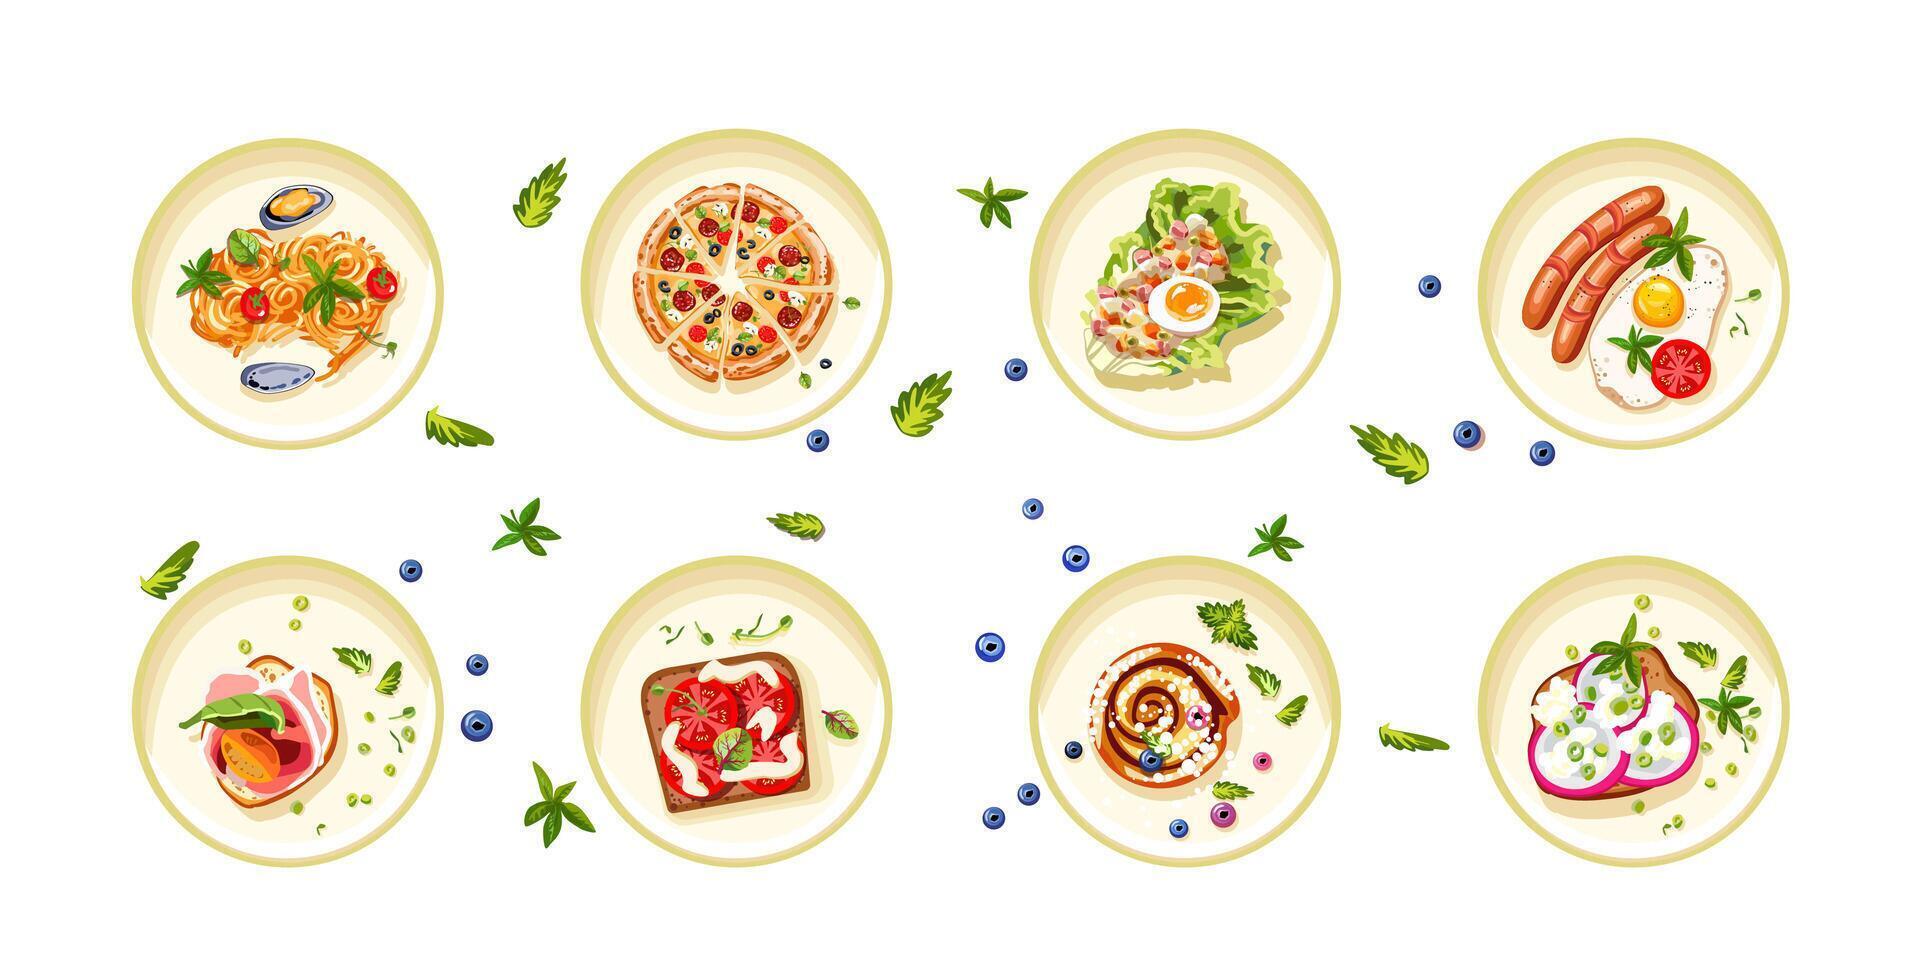 en uppsättning av snabb mat och snacks för utskrift på Kafé och restaurang menyer. friska mat. italiensk maträtter, desserter för frukost, lunch, och middag. vektor illustration.